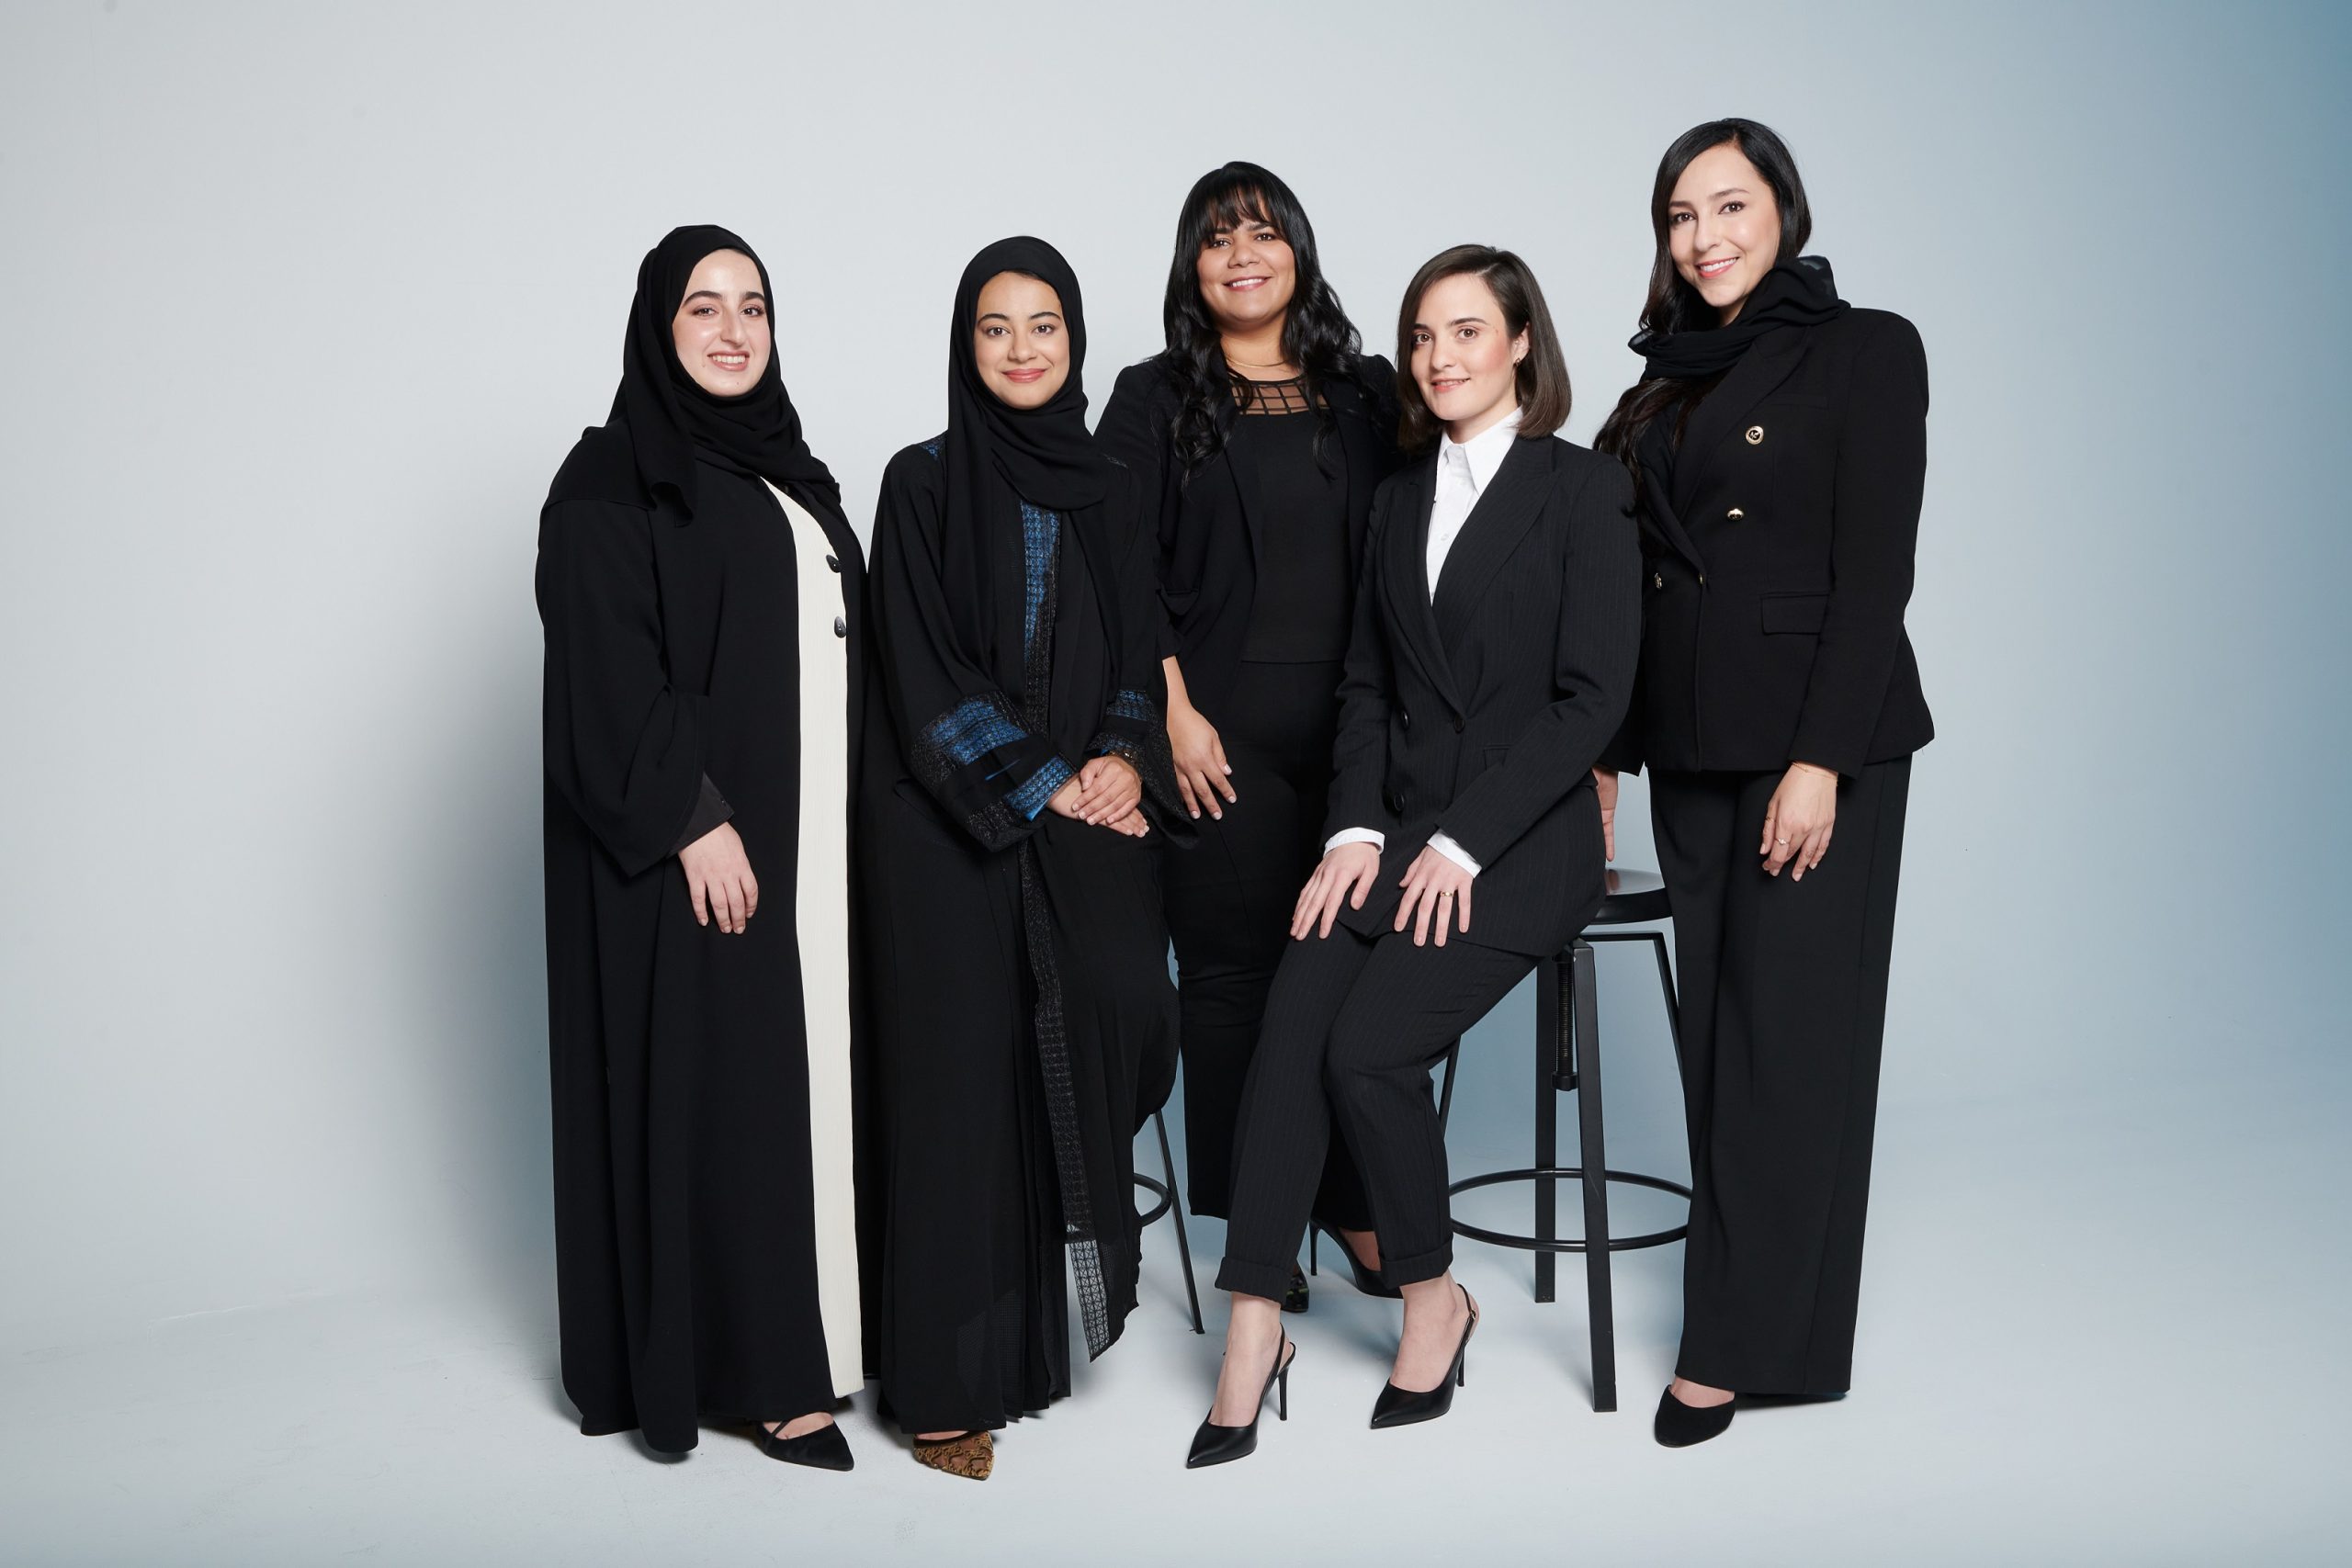 برنامج لوريال-اليونسكو من أجل المرأة في العلم يكرّم خمس عالمات عربيات